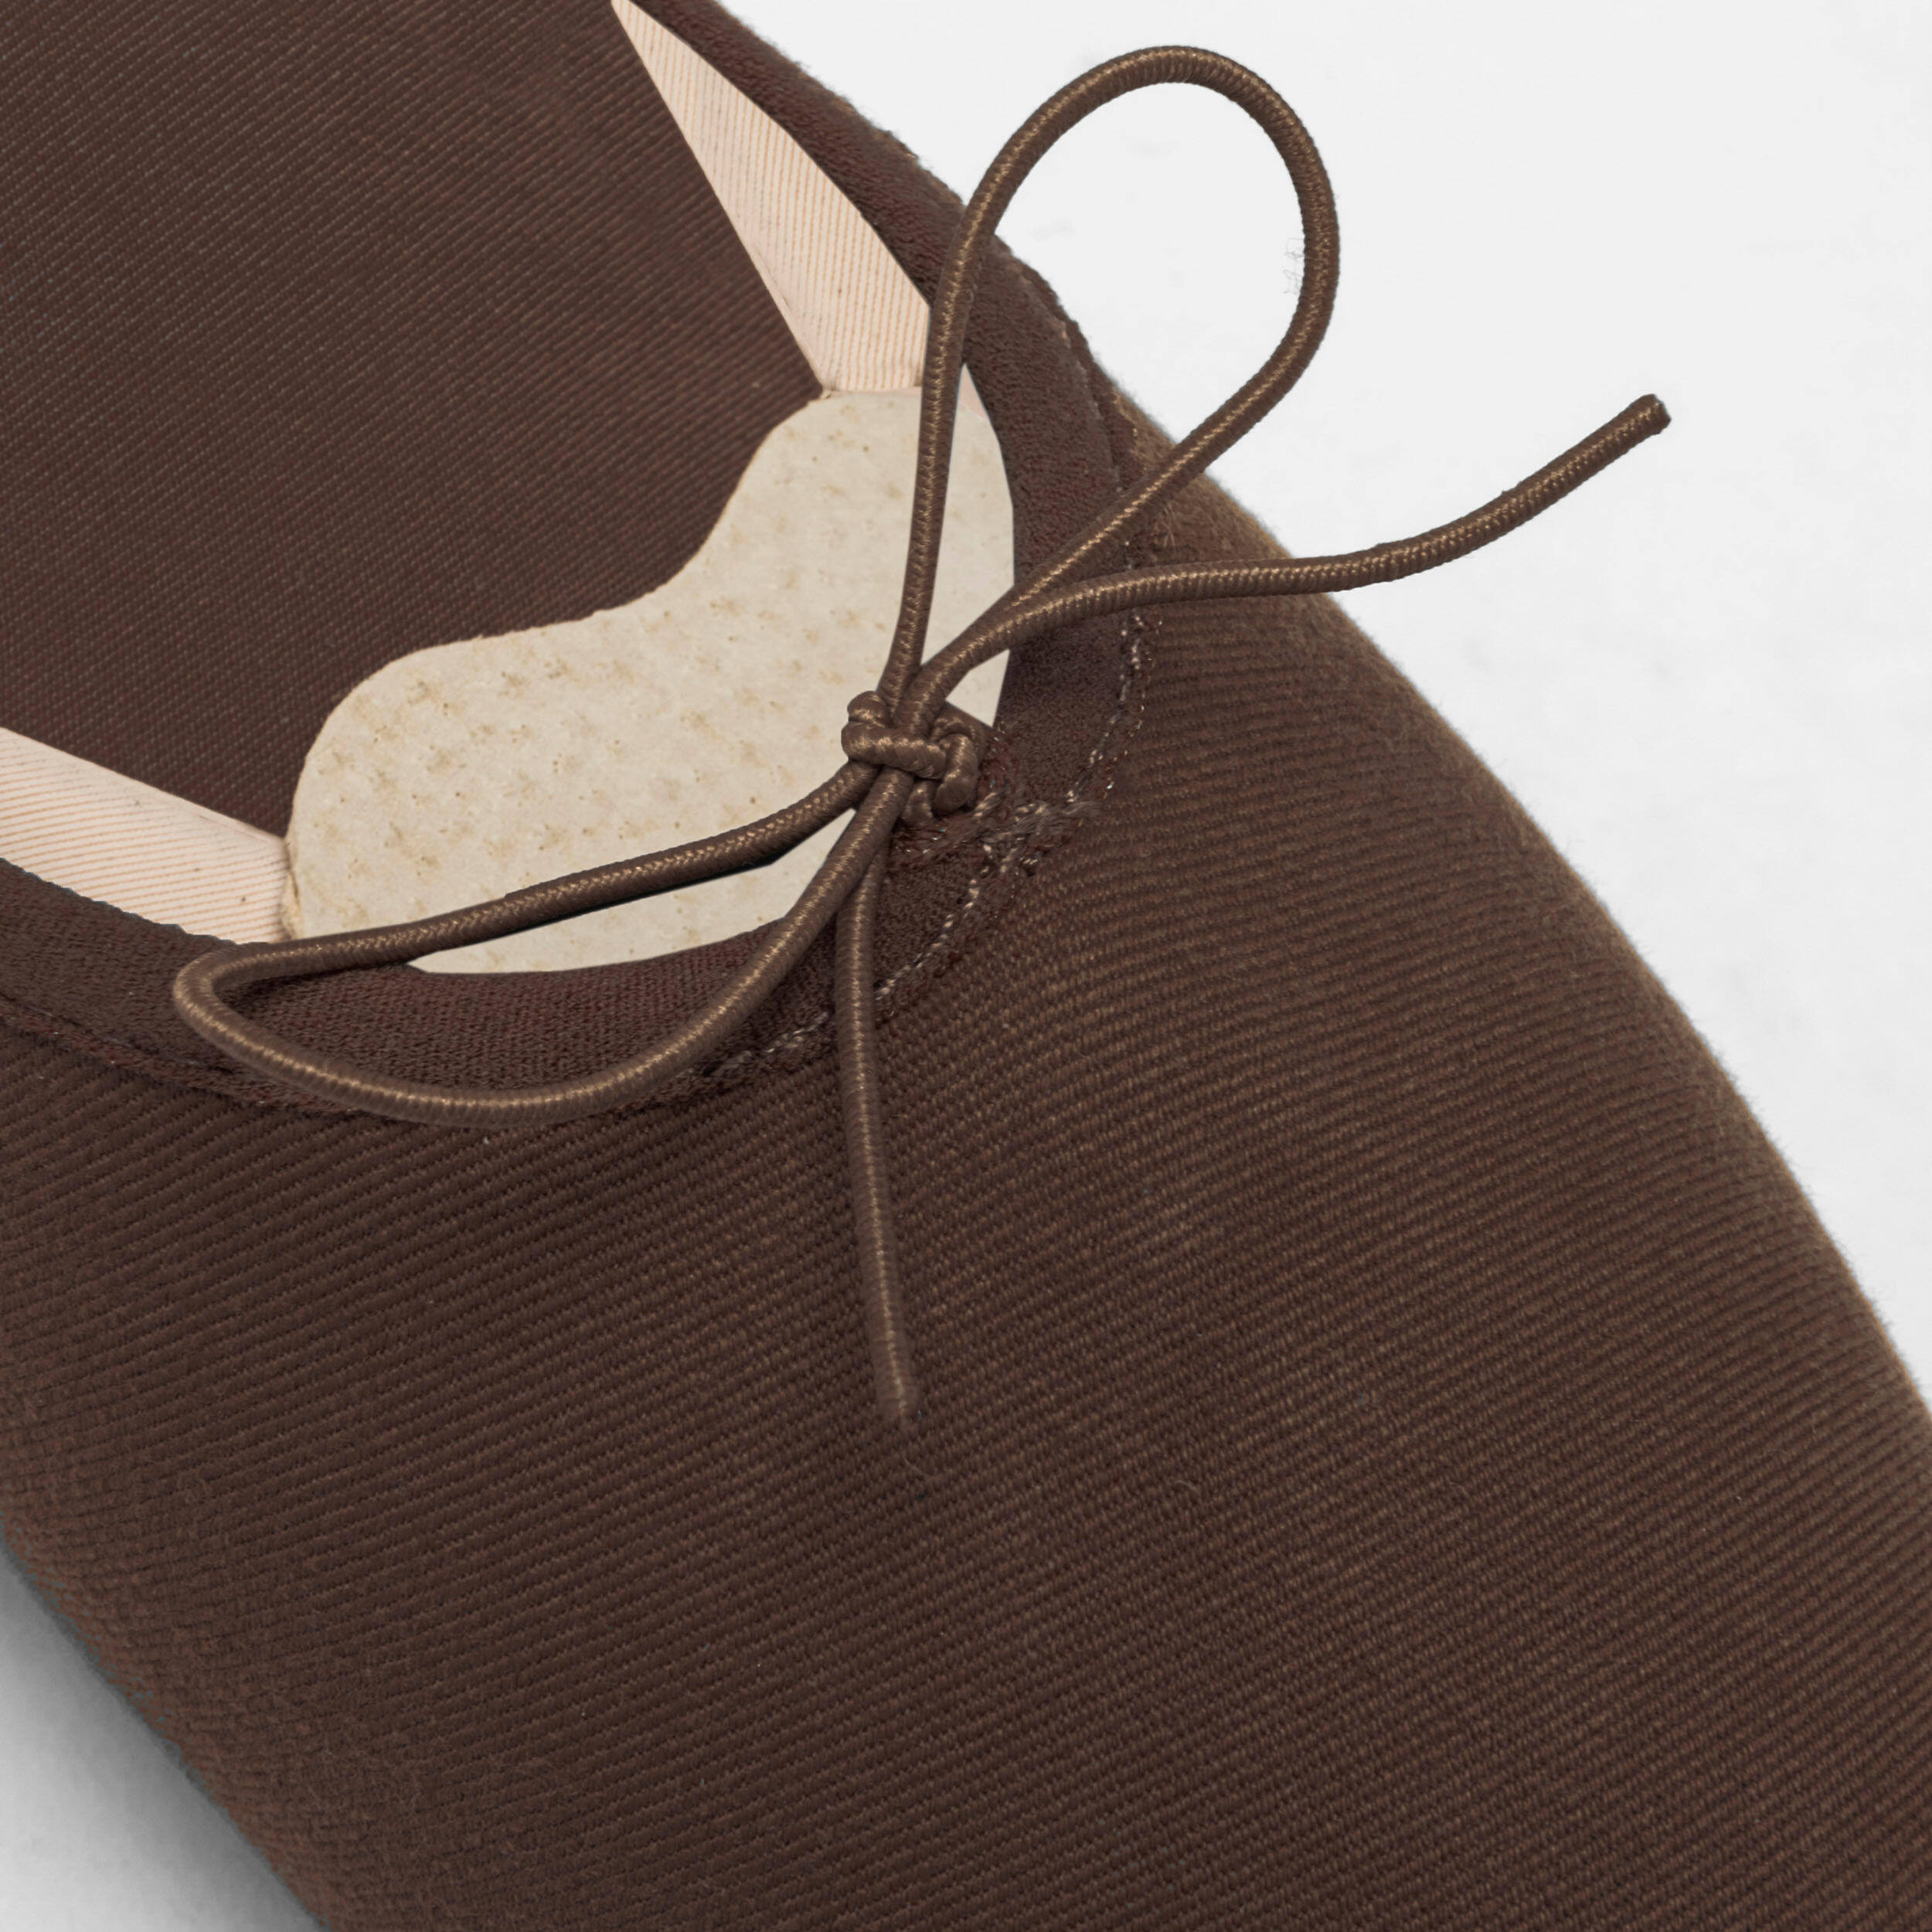 Split-Sole Stretch Canvas Demi-Pointe Ballet Shoes - Chocolate 2/6